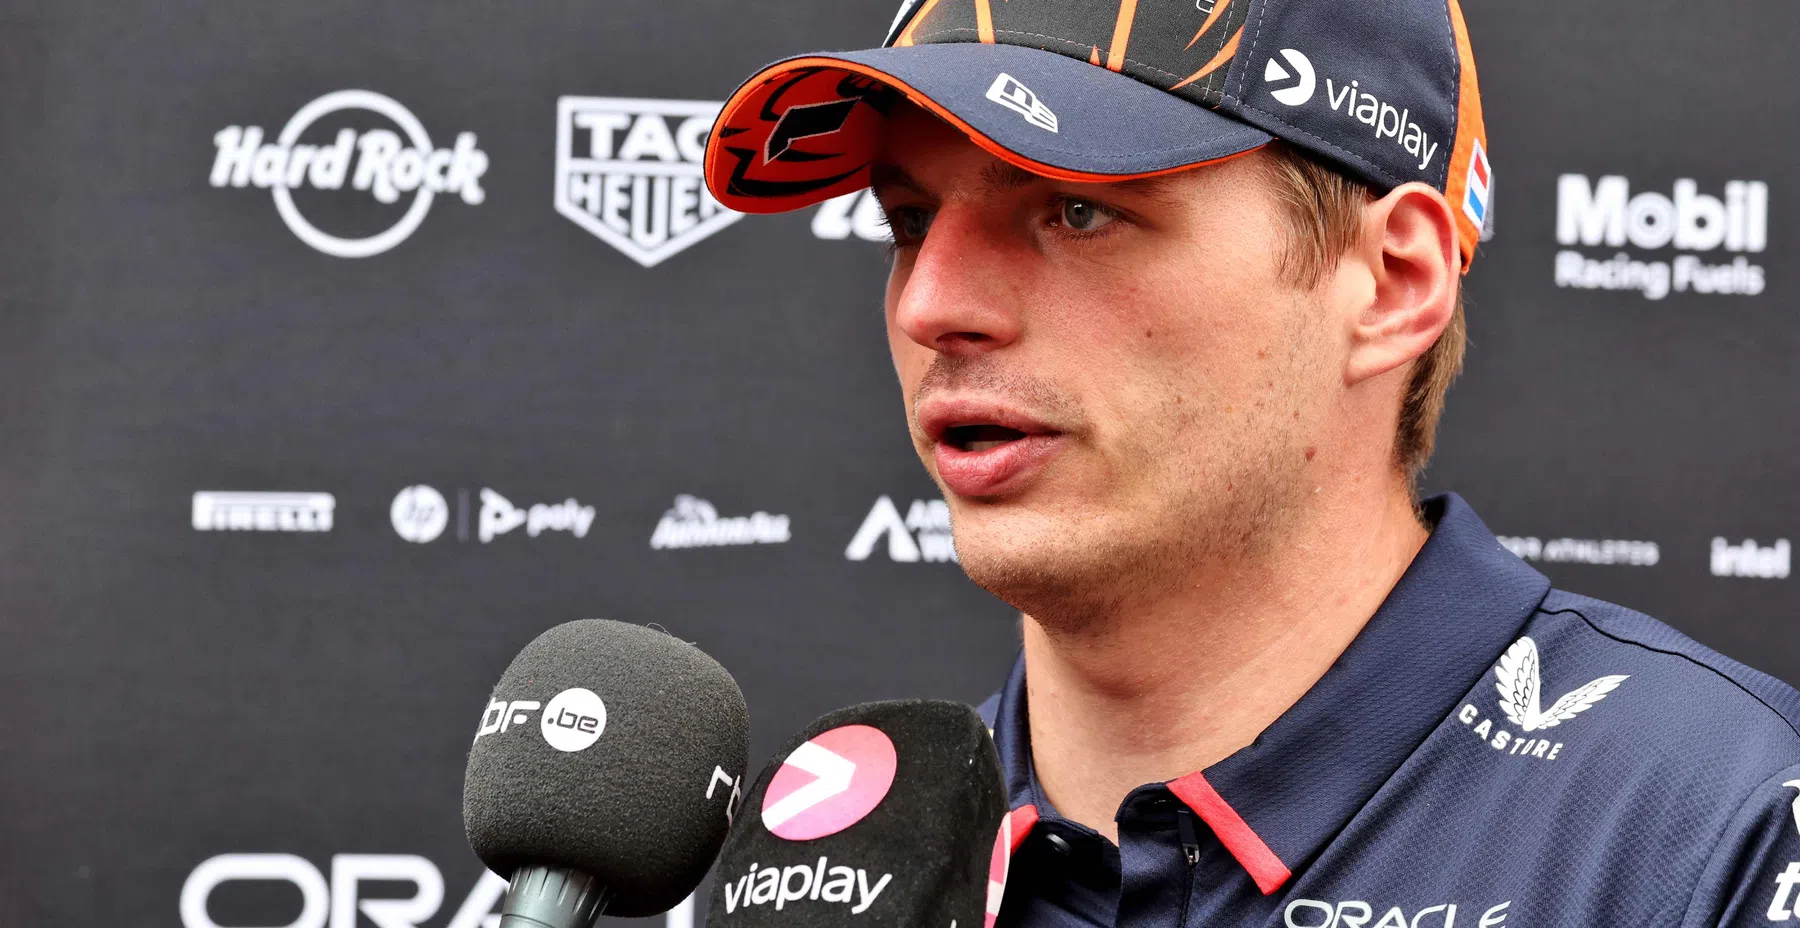 Verstappen weist nach dem Qualifying zum Spanien GP auf den Schmerzpunkt bei Red Bull hin